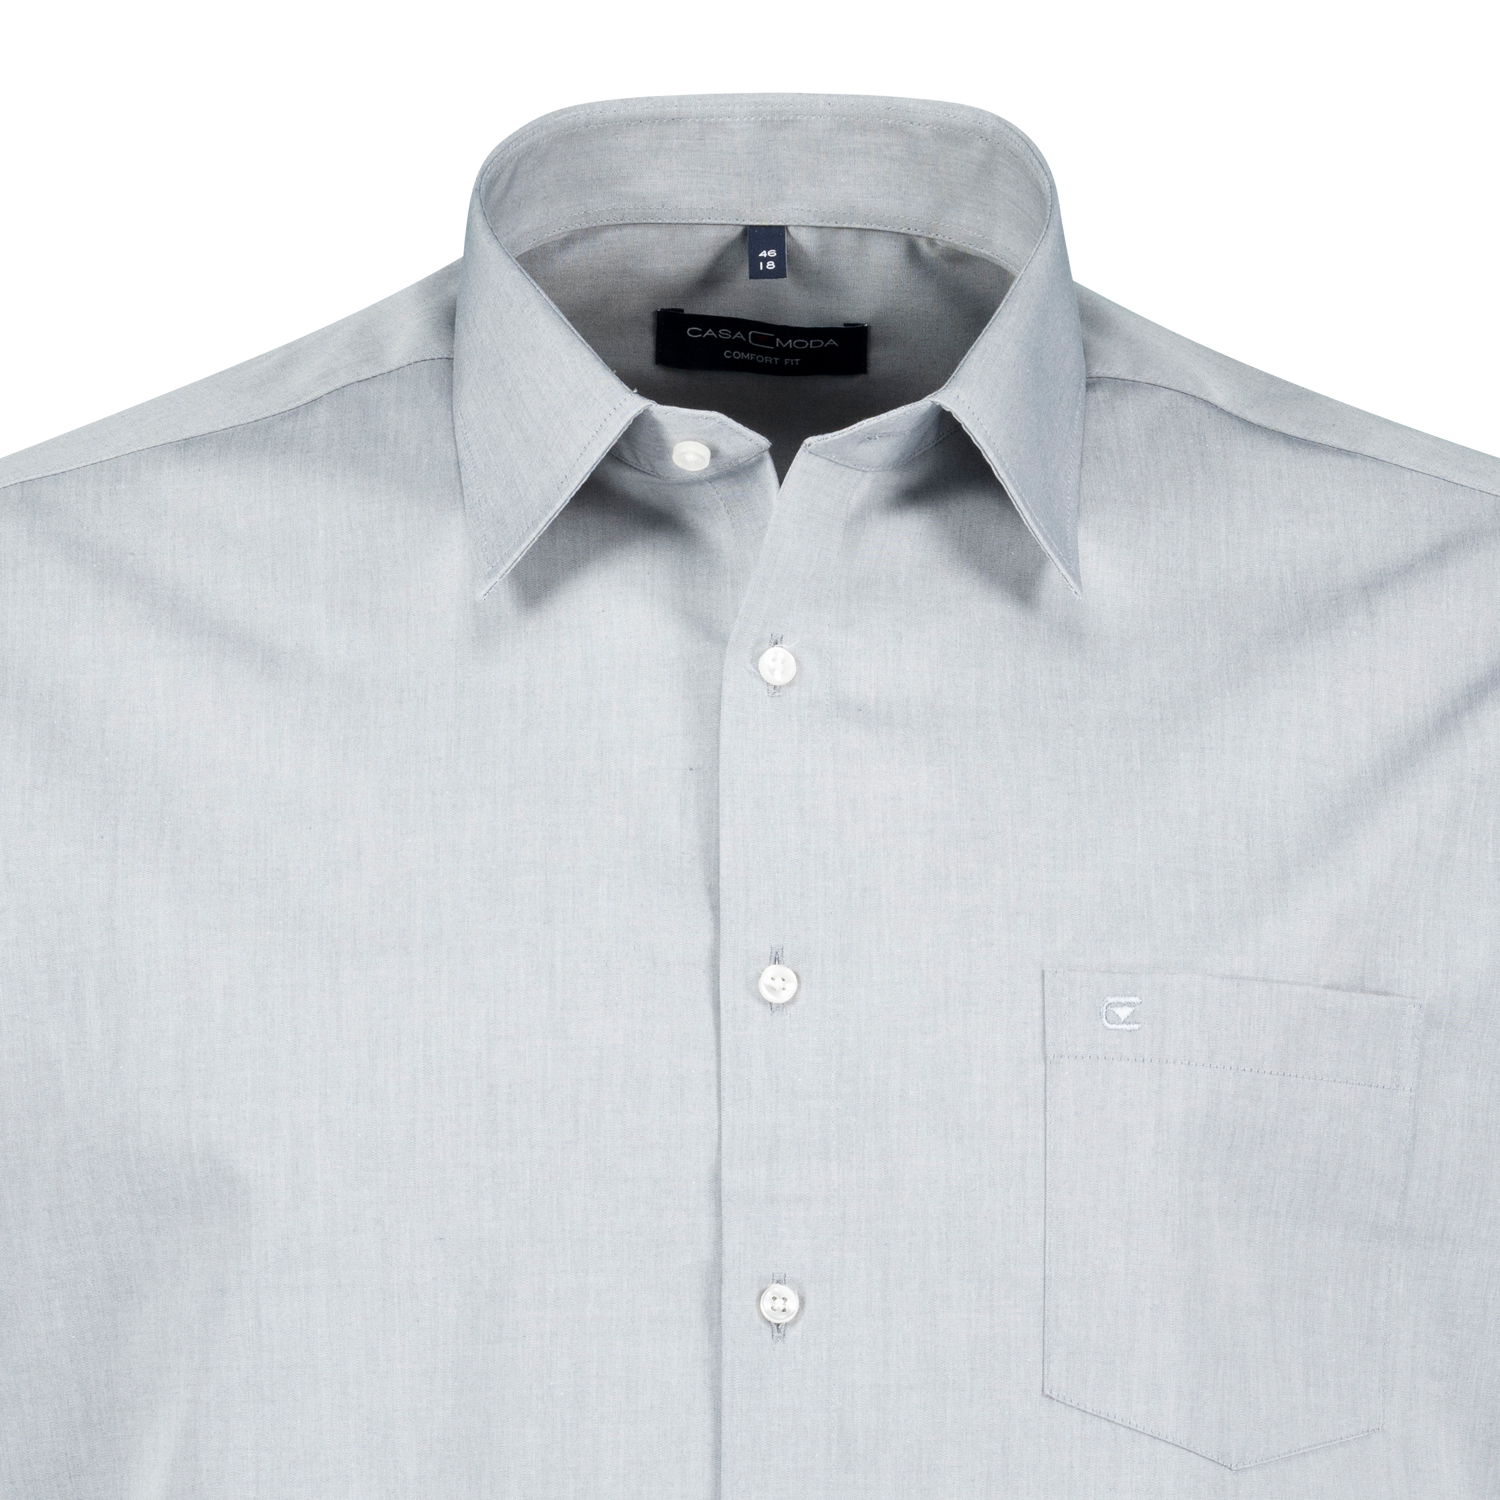 Hemd kurzarm für Herren in hellgrau von Casamoda in großen Größen bis 7XL - bügelfrei